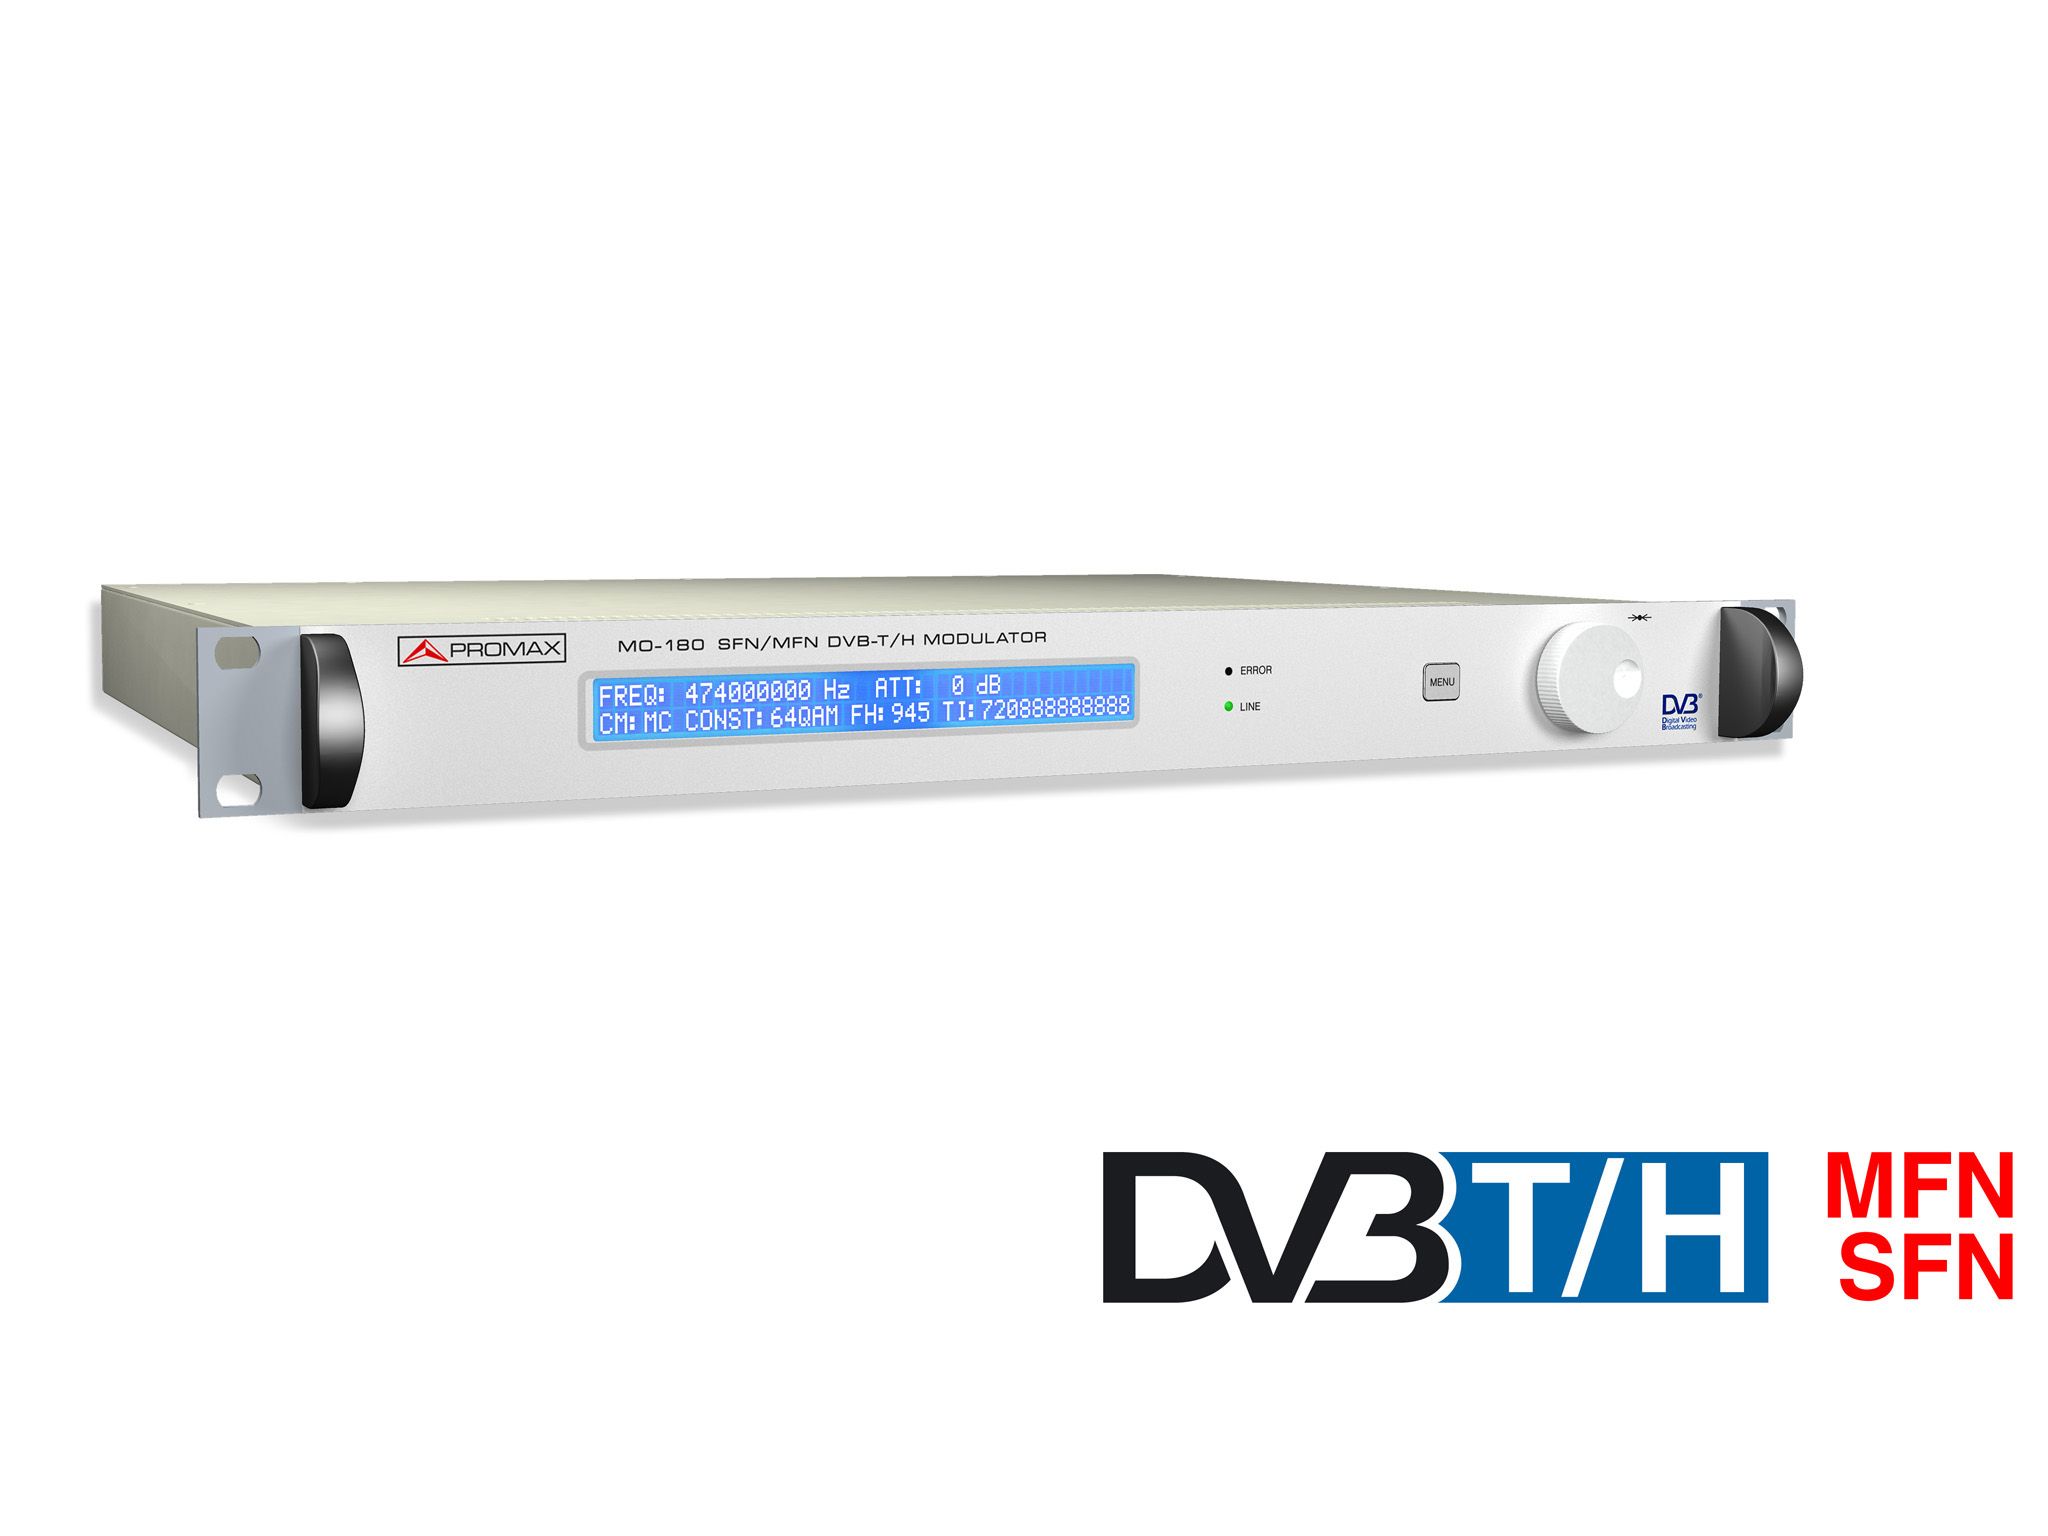 MO-180: Modulador DVB-T y DVB-H